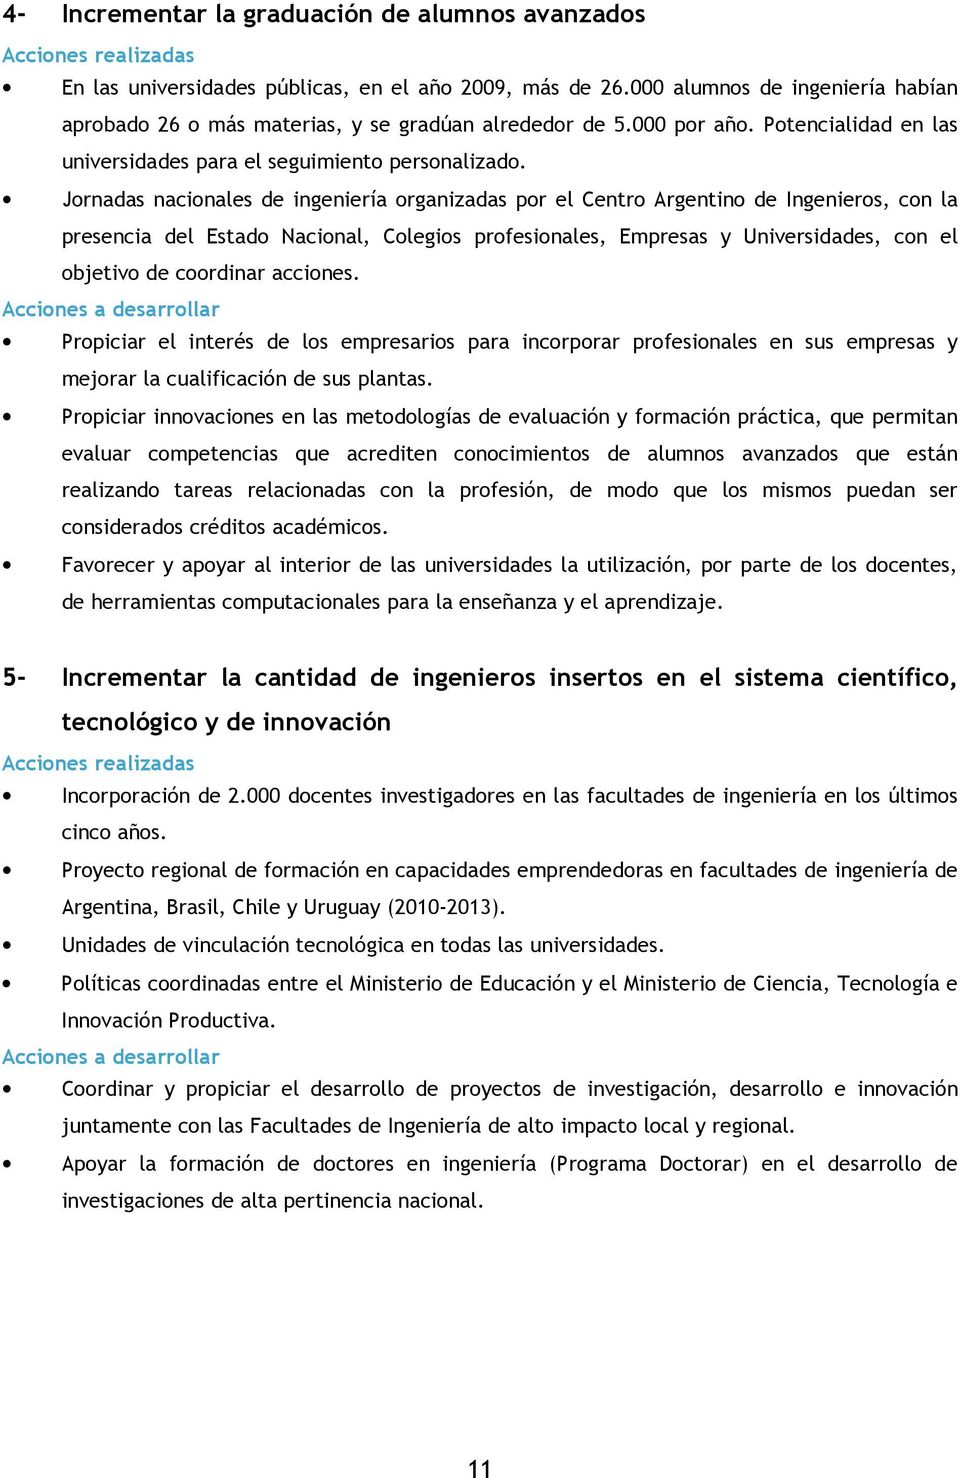 Jornadas nacionales de ingeniería organizadas por el Centro Argentino de Ingenieros, con la presencia del Estado Nacional, Colegios profesionales, Empresas y Universidades, con el objetivo de